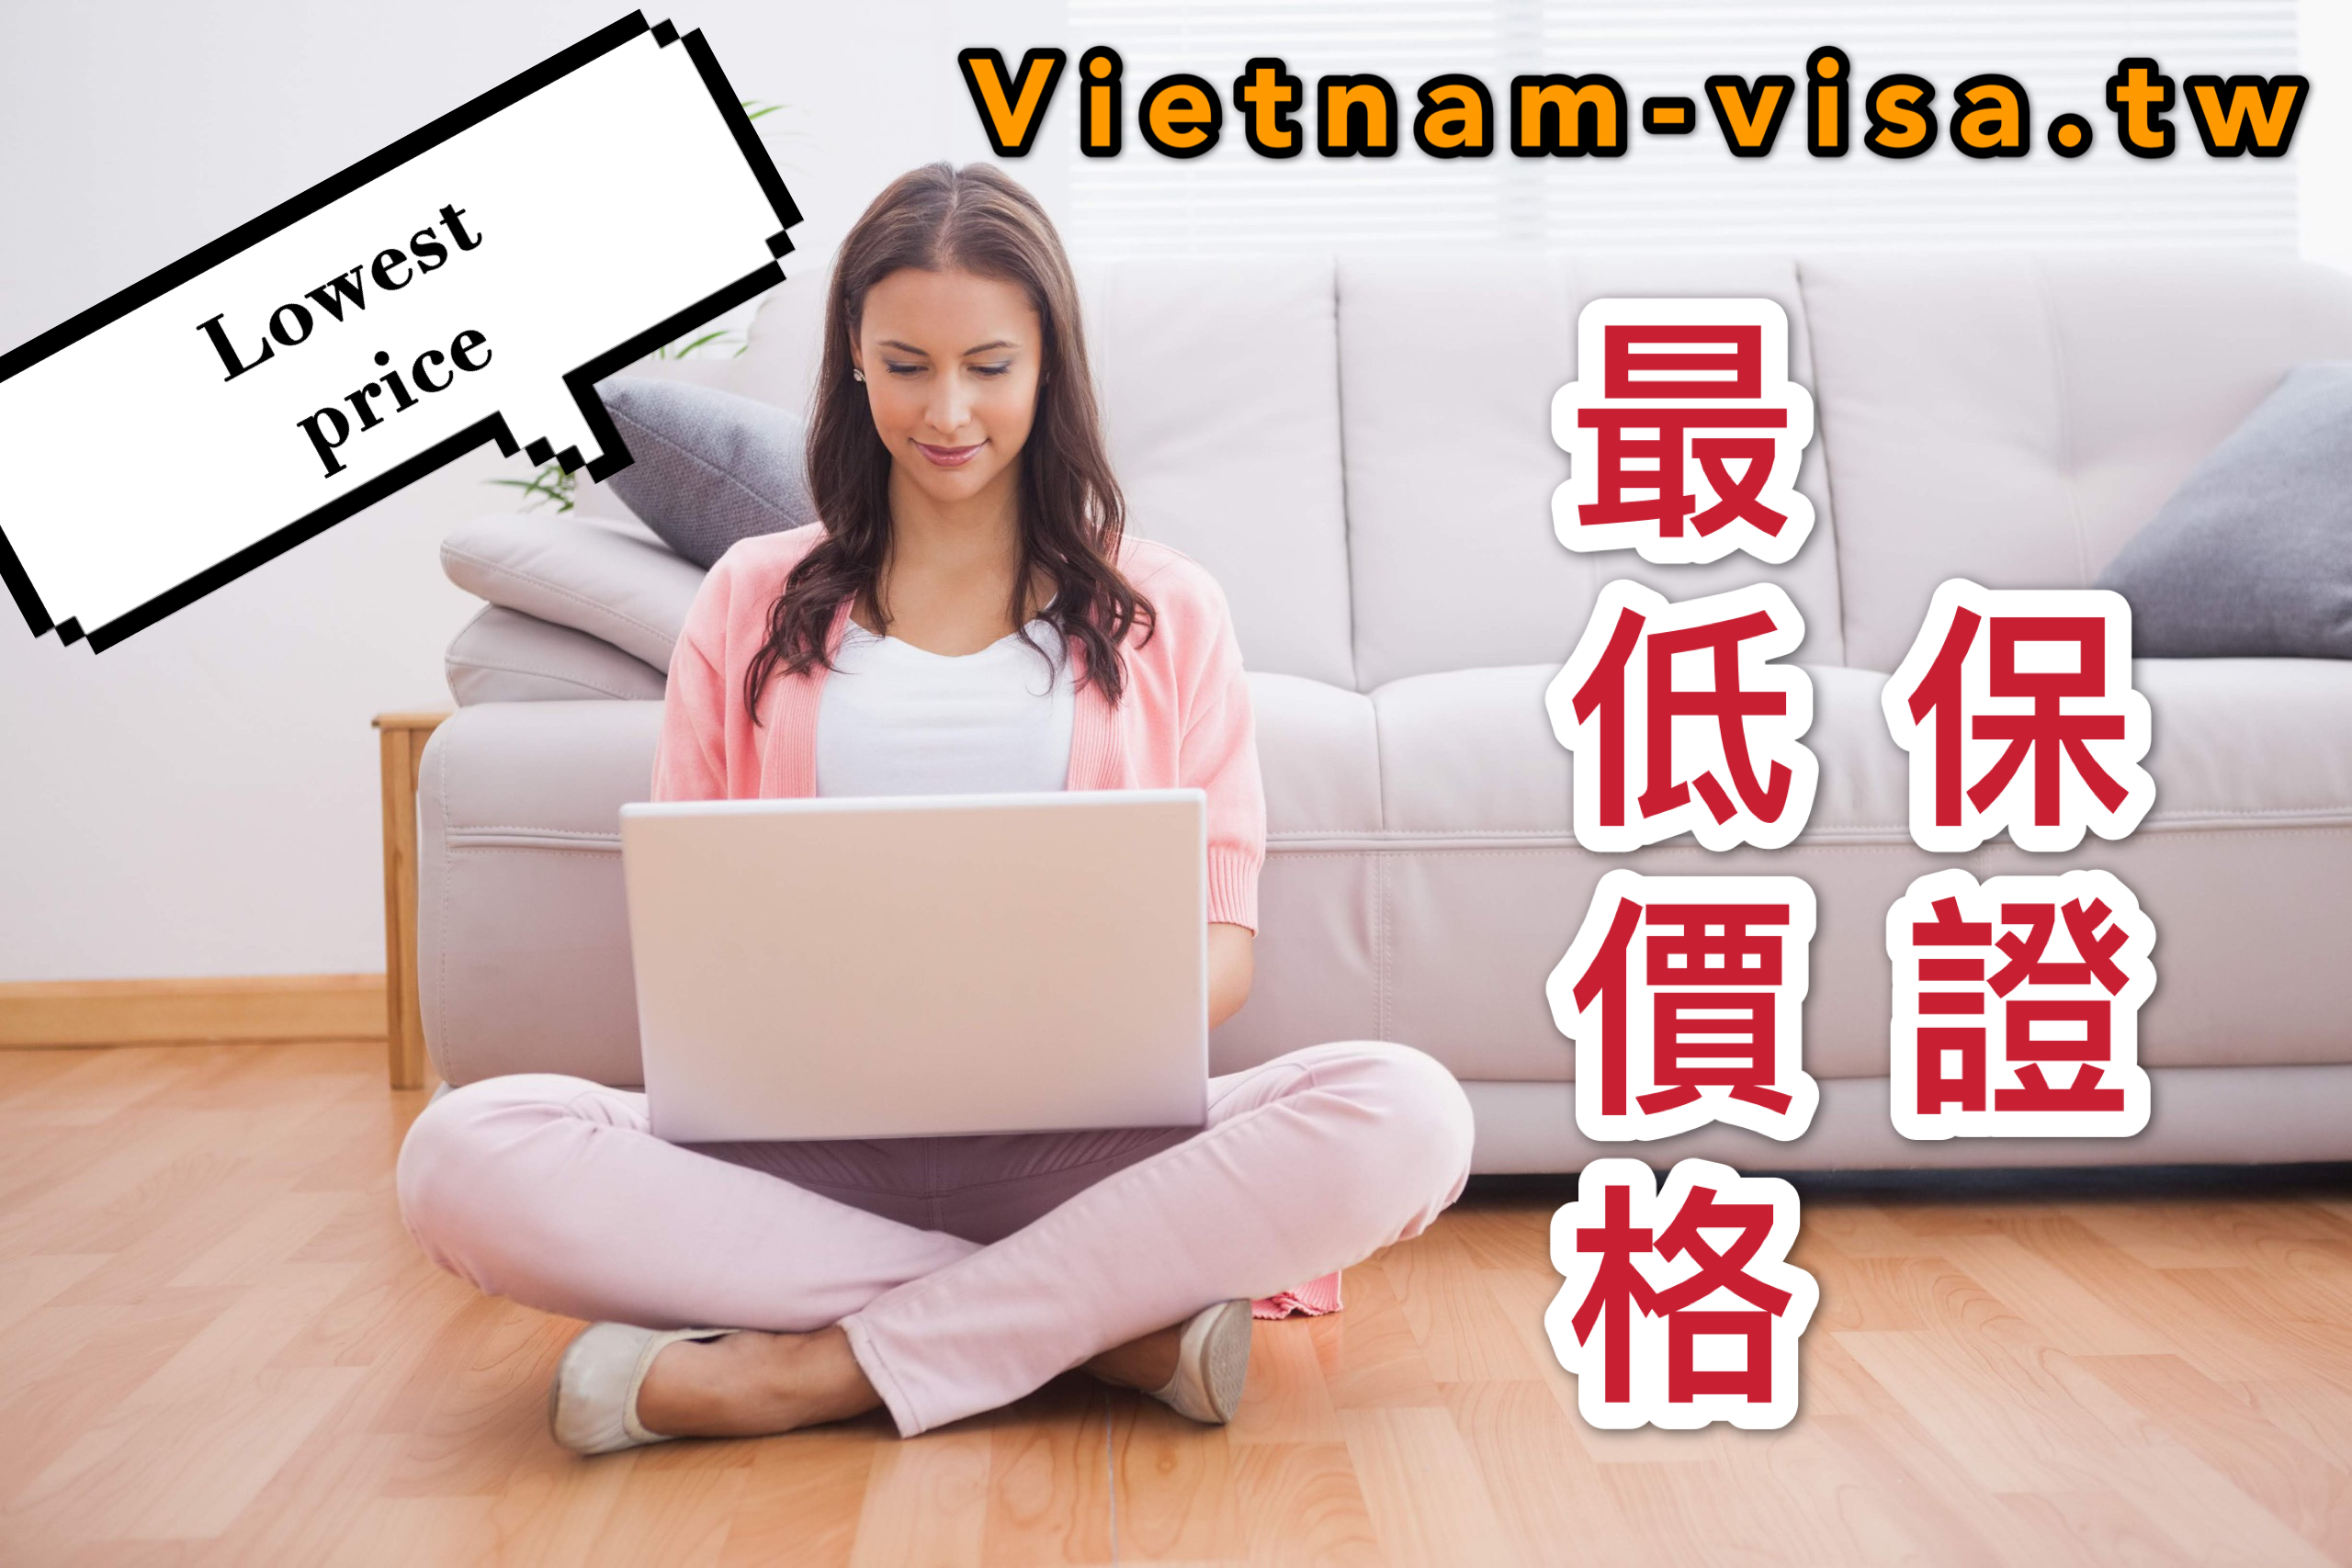 给外國专家、經理、高科技工作和投资者辦理越南商務簽證的服务 - 费用最低